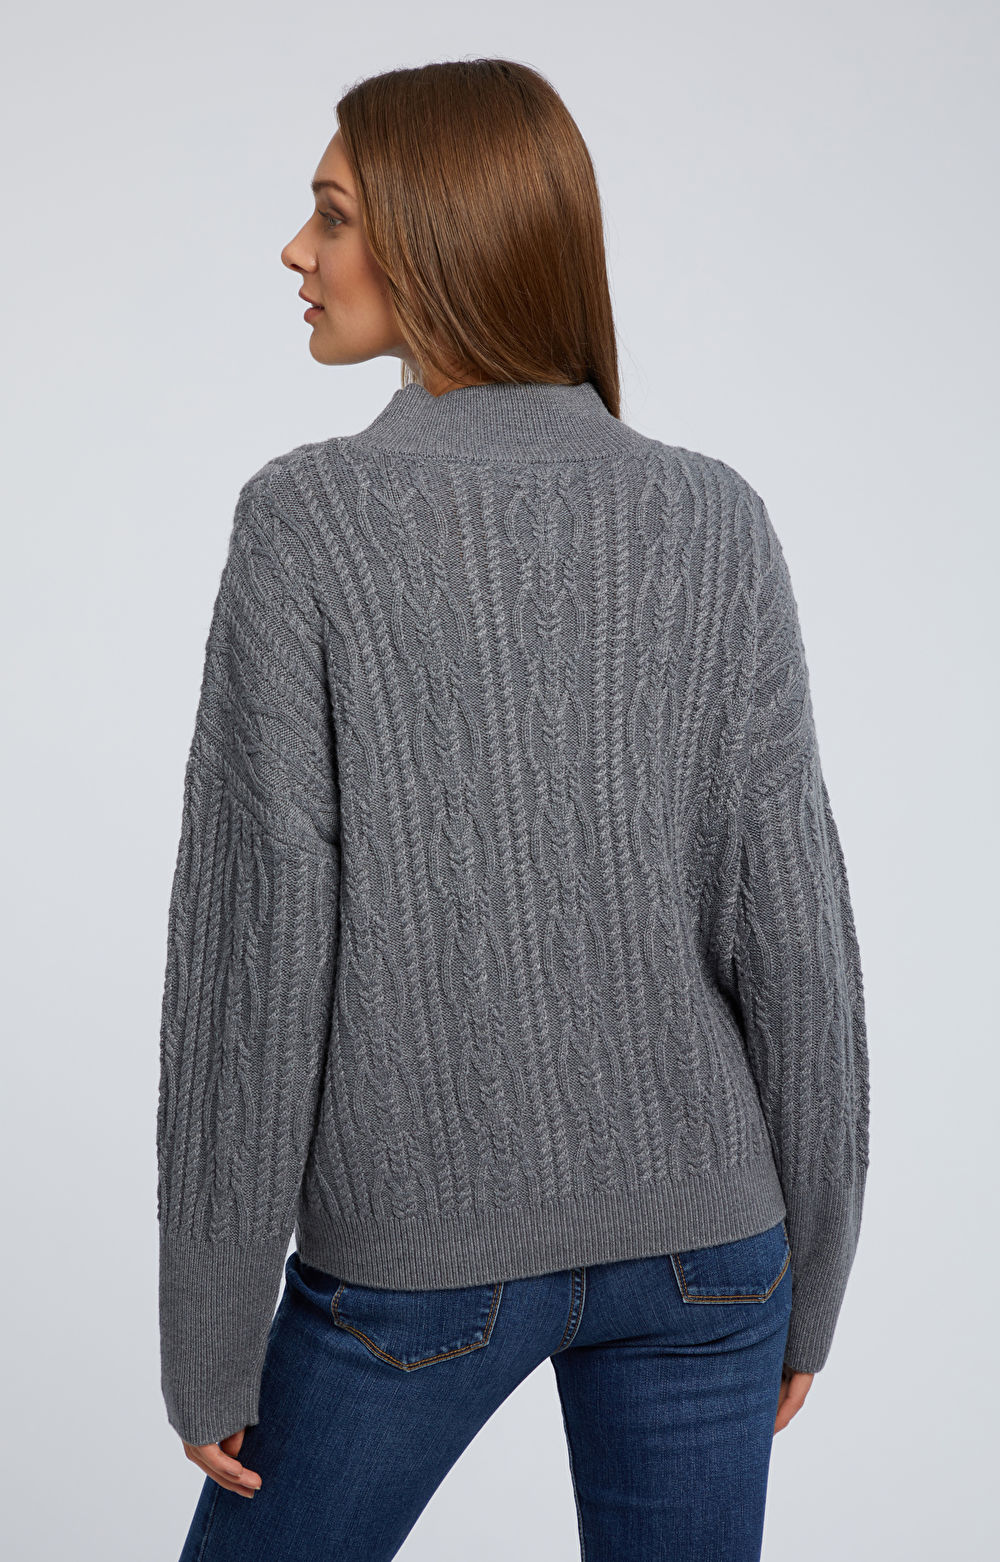 Sweter z warkoczowym splotem